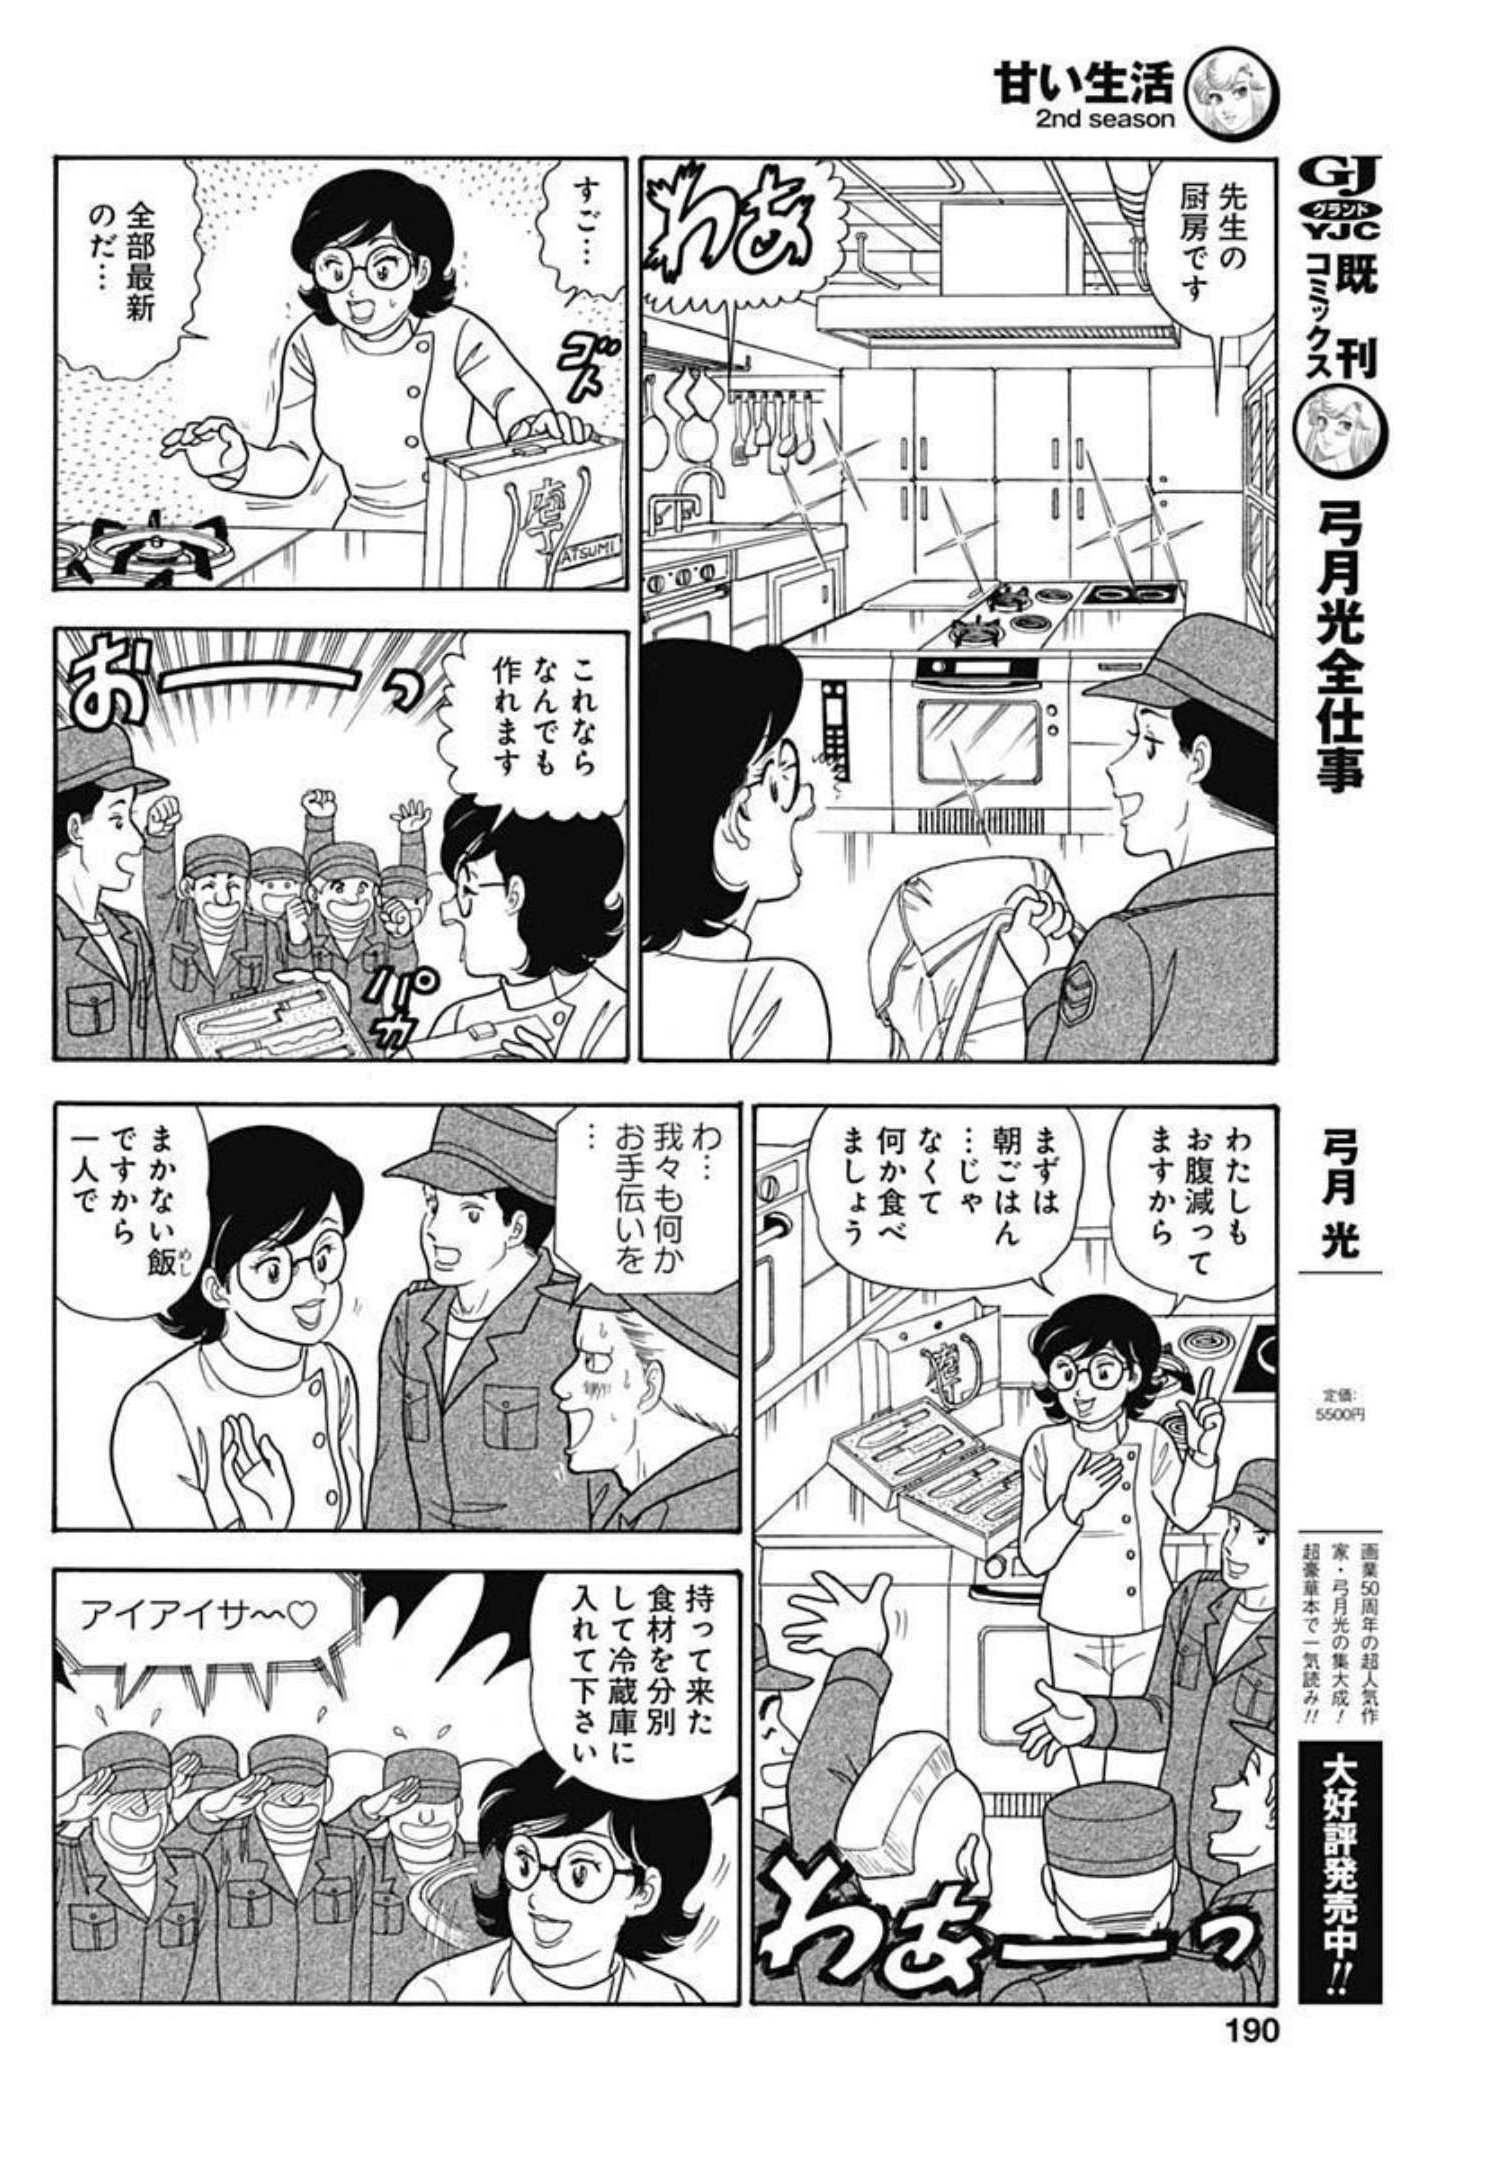 甘い生活 2nd season 第220話 - Page 6